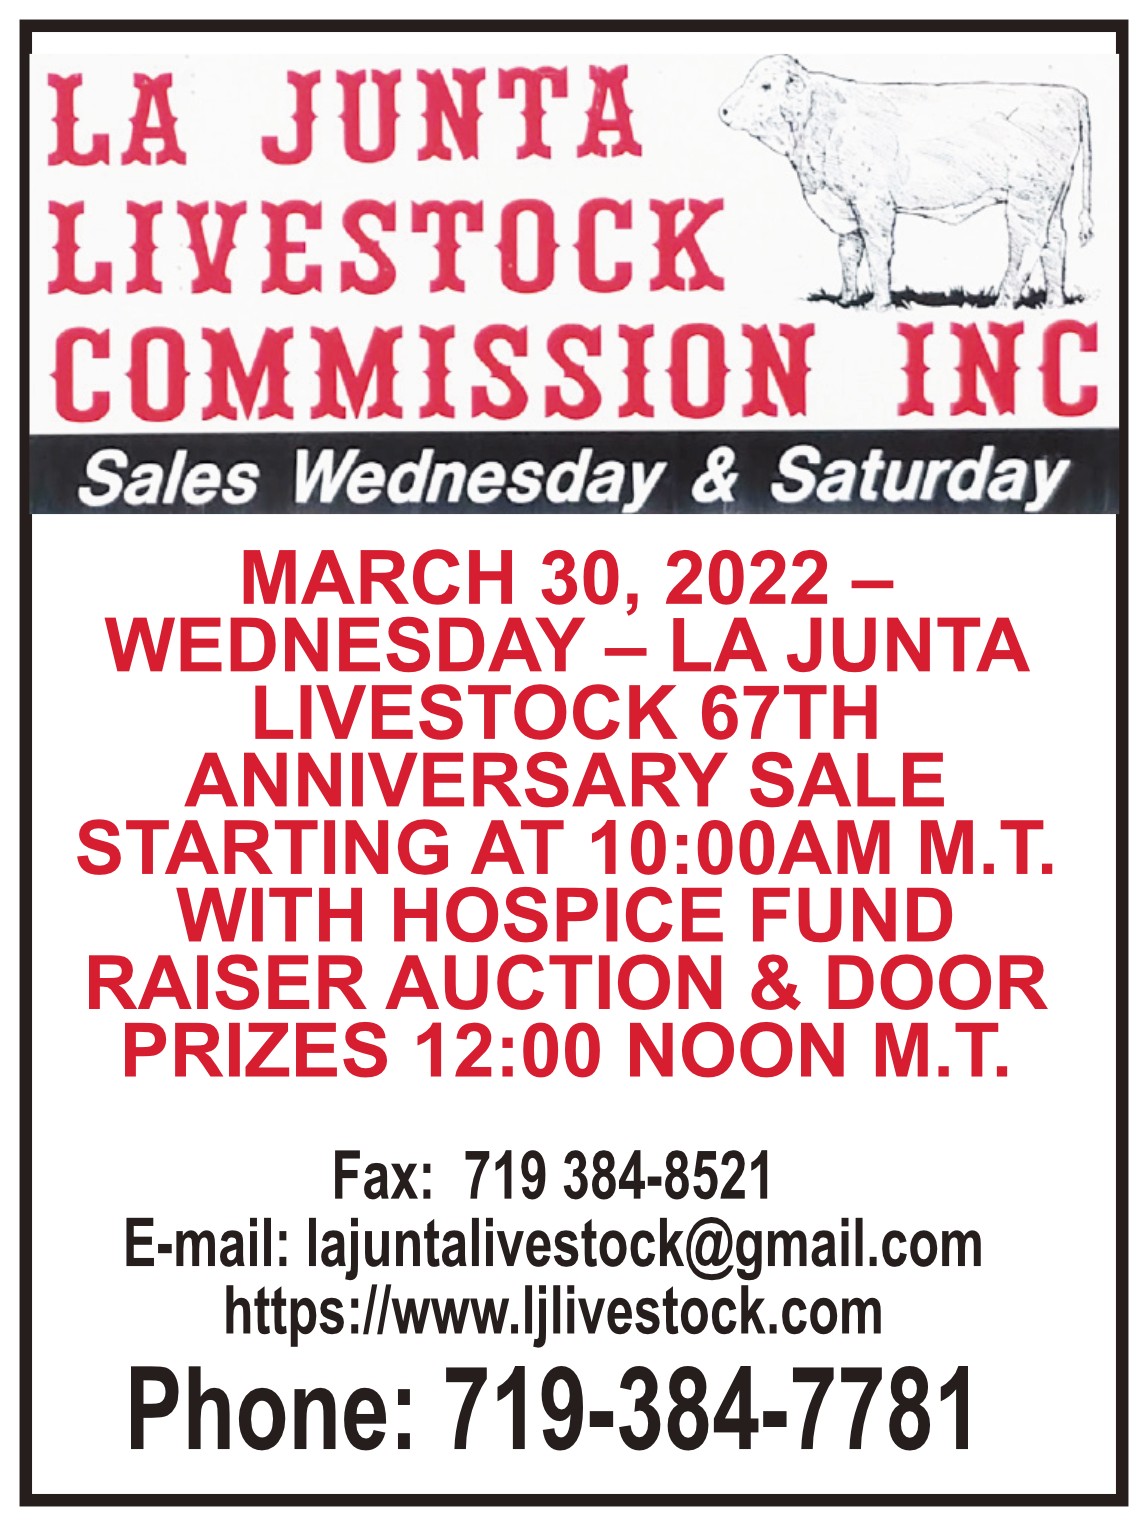 La Junta Livestock 67th Anniversary Sale and Hospice Fundraiser